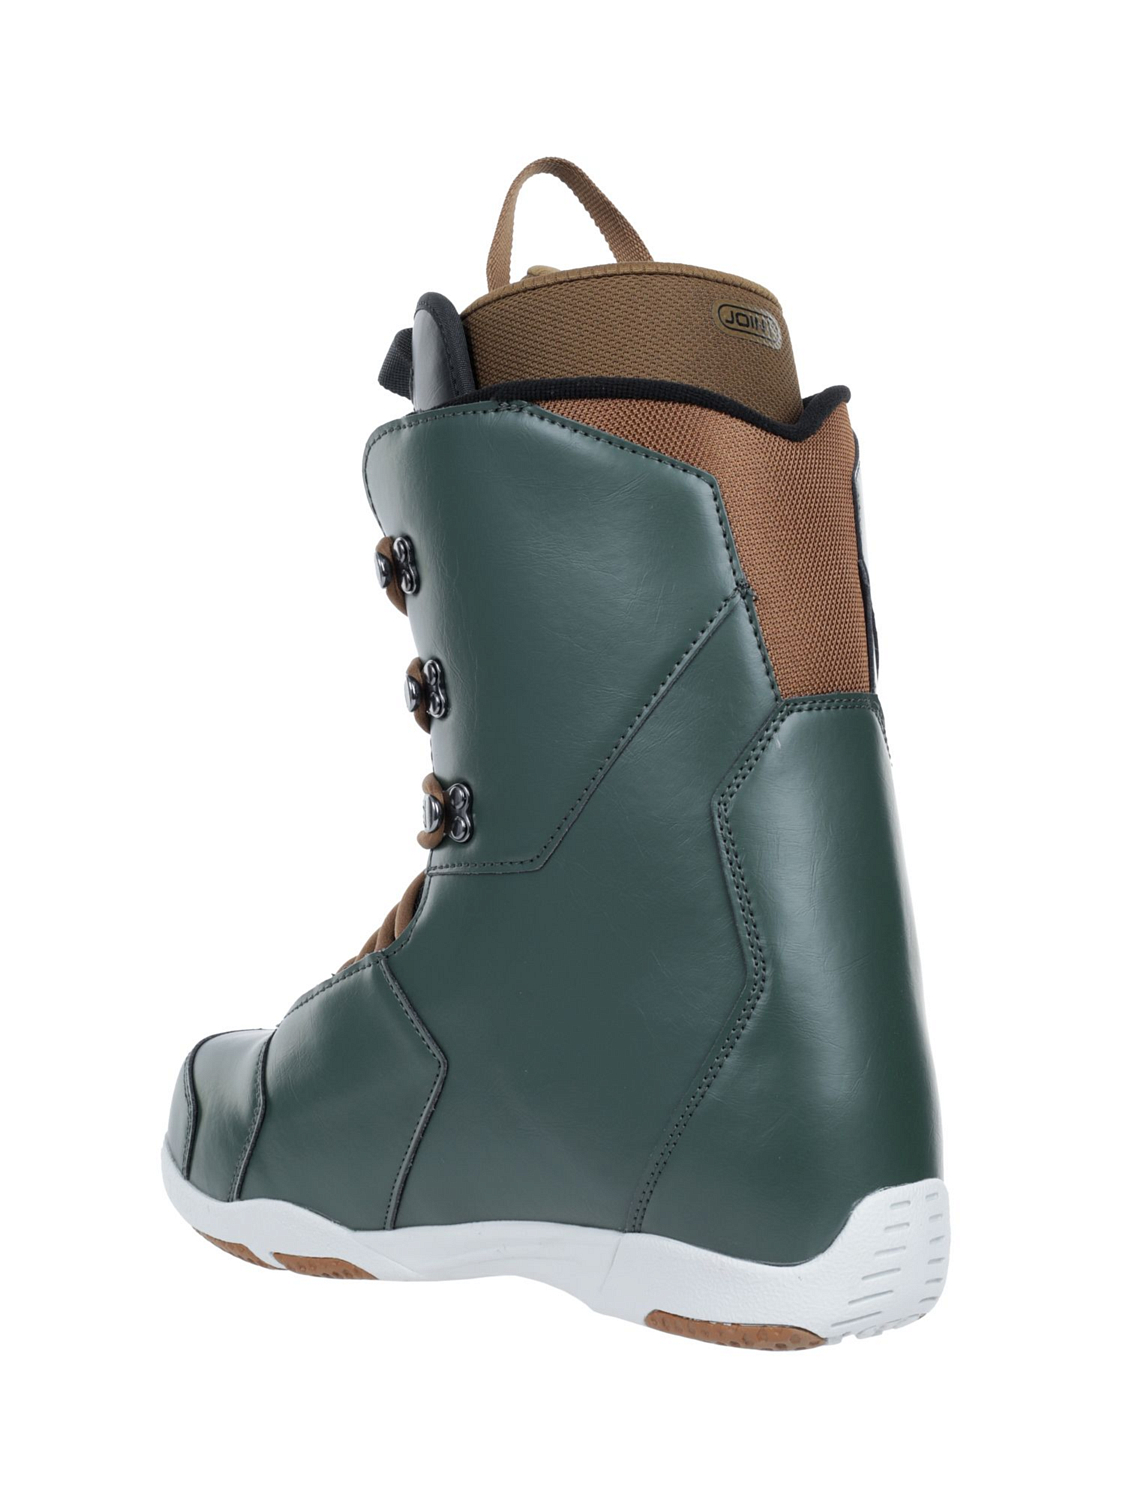 Ботинки для сноуборда Joint Forceful Grey Green/Light Brown